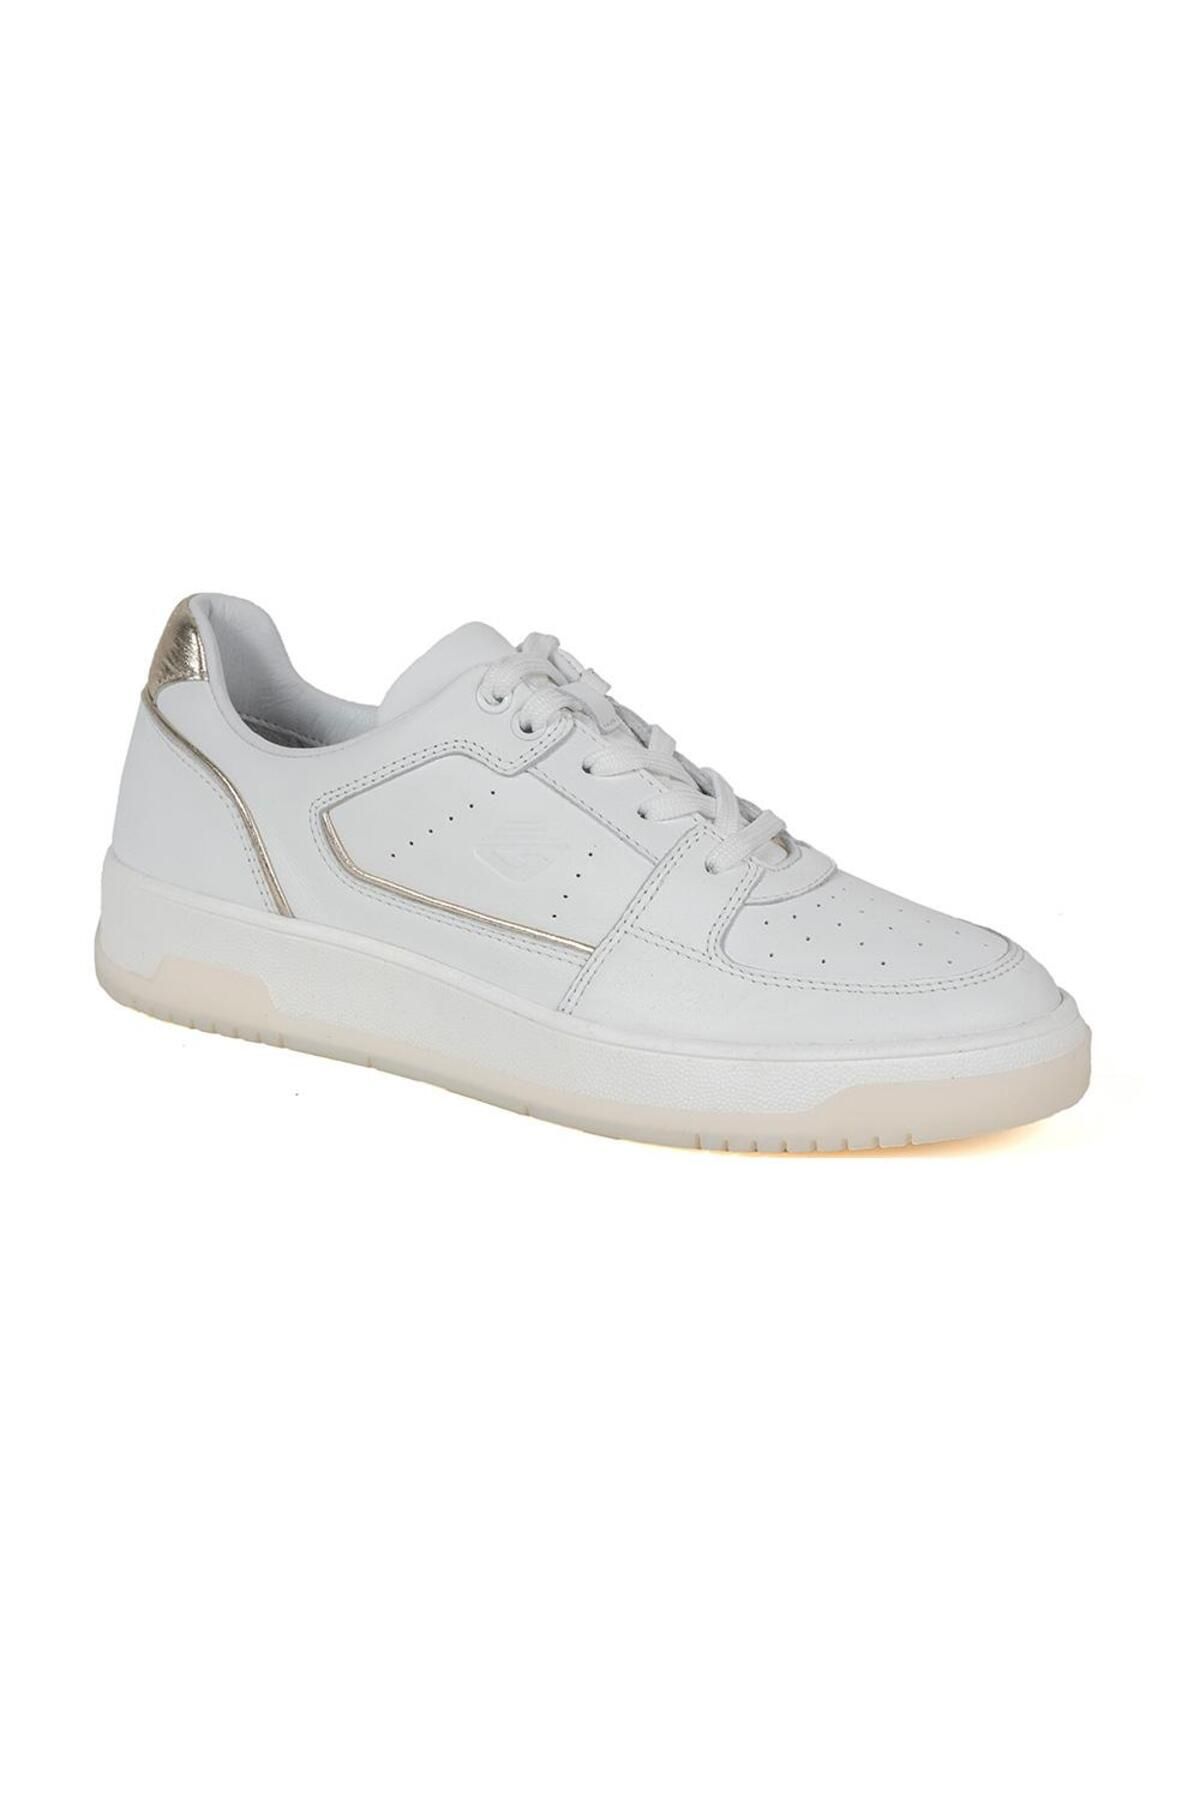 Greyder 32311 Beyaz Altın Deri Sneaker Casual Kadın Ayakkabı